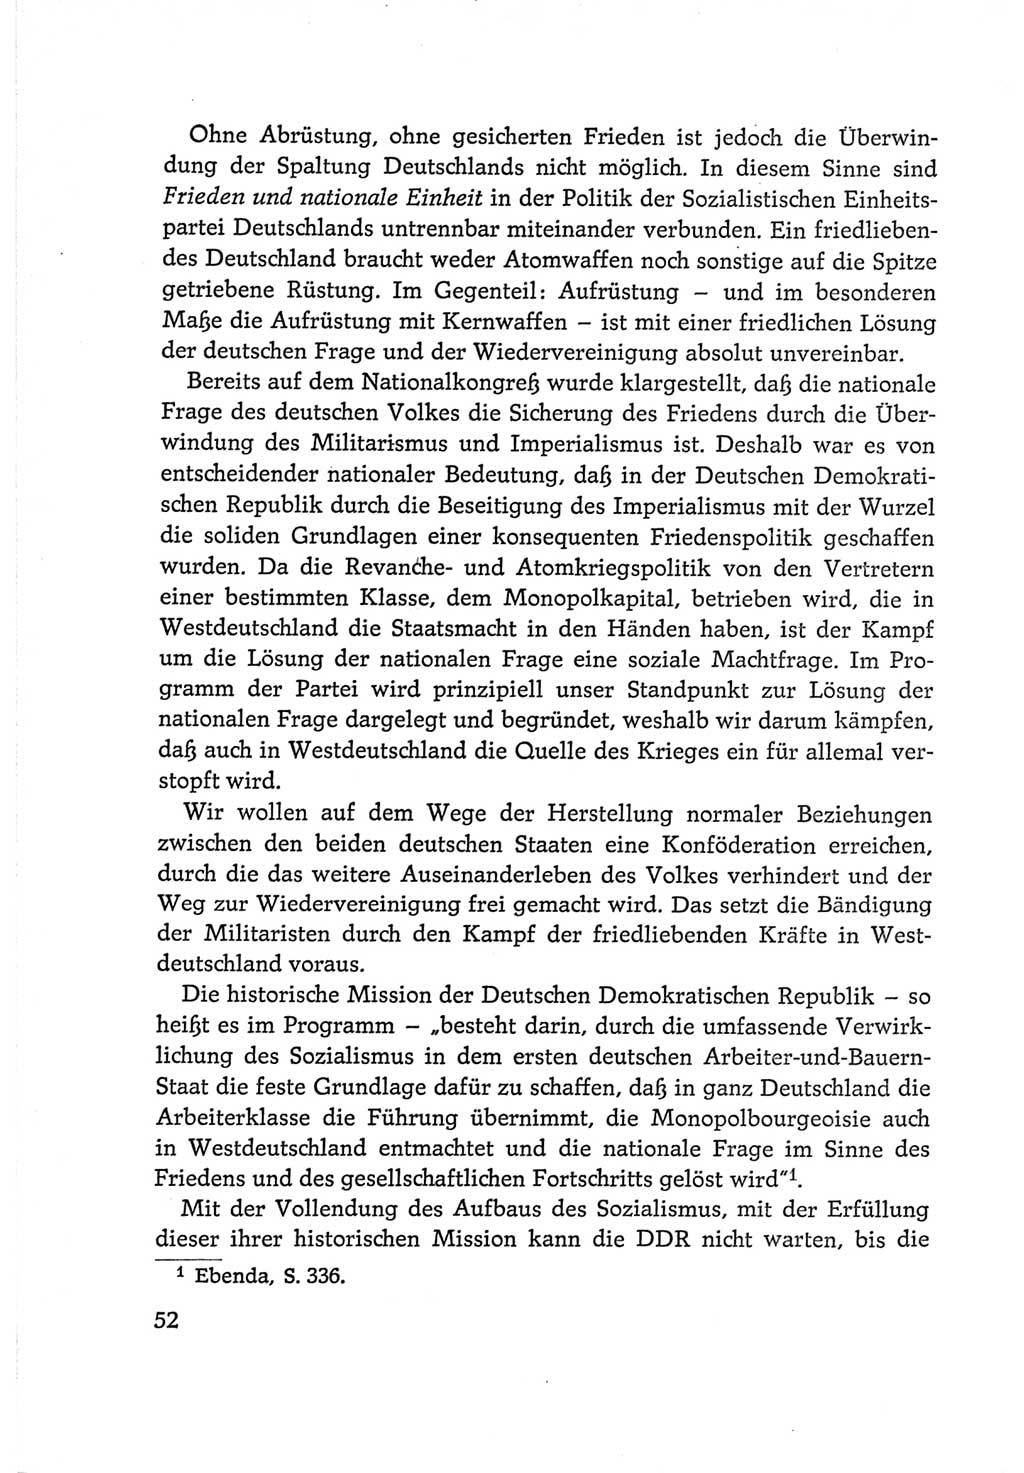 Protokoll der Verhandlungen des Ⅵ. Parteitages der Sozialistischen Einheitspartei Deutschlands (SED) [Deutsche Demokratische Republik (DDR)] 1963, Band Ⅰ, Seite 52 (Prot. Verh. Ⅵ. PT SED DDR 1963, Bd. Ⅰ, S. 52)